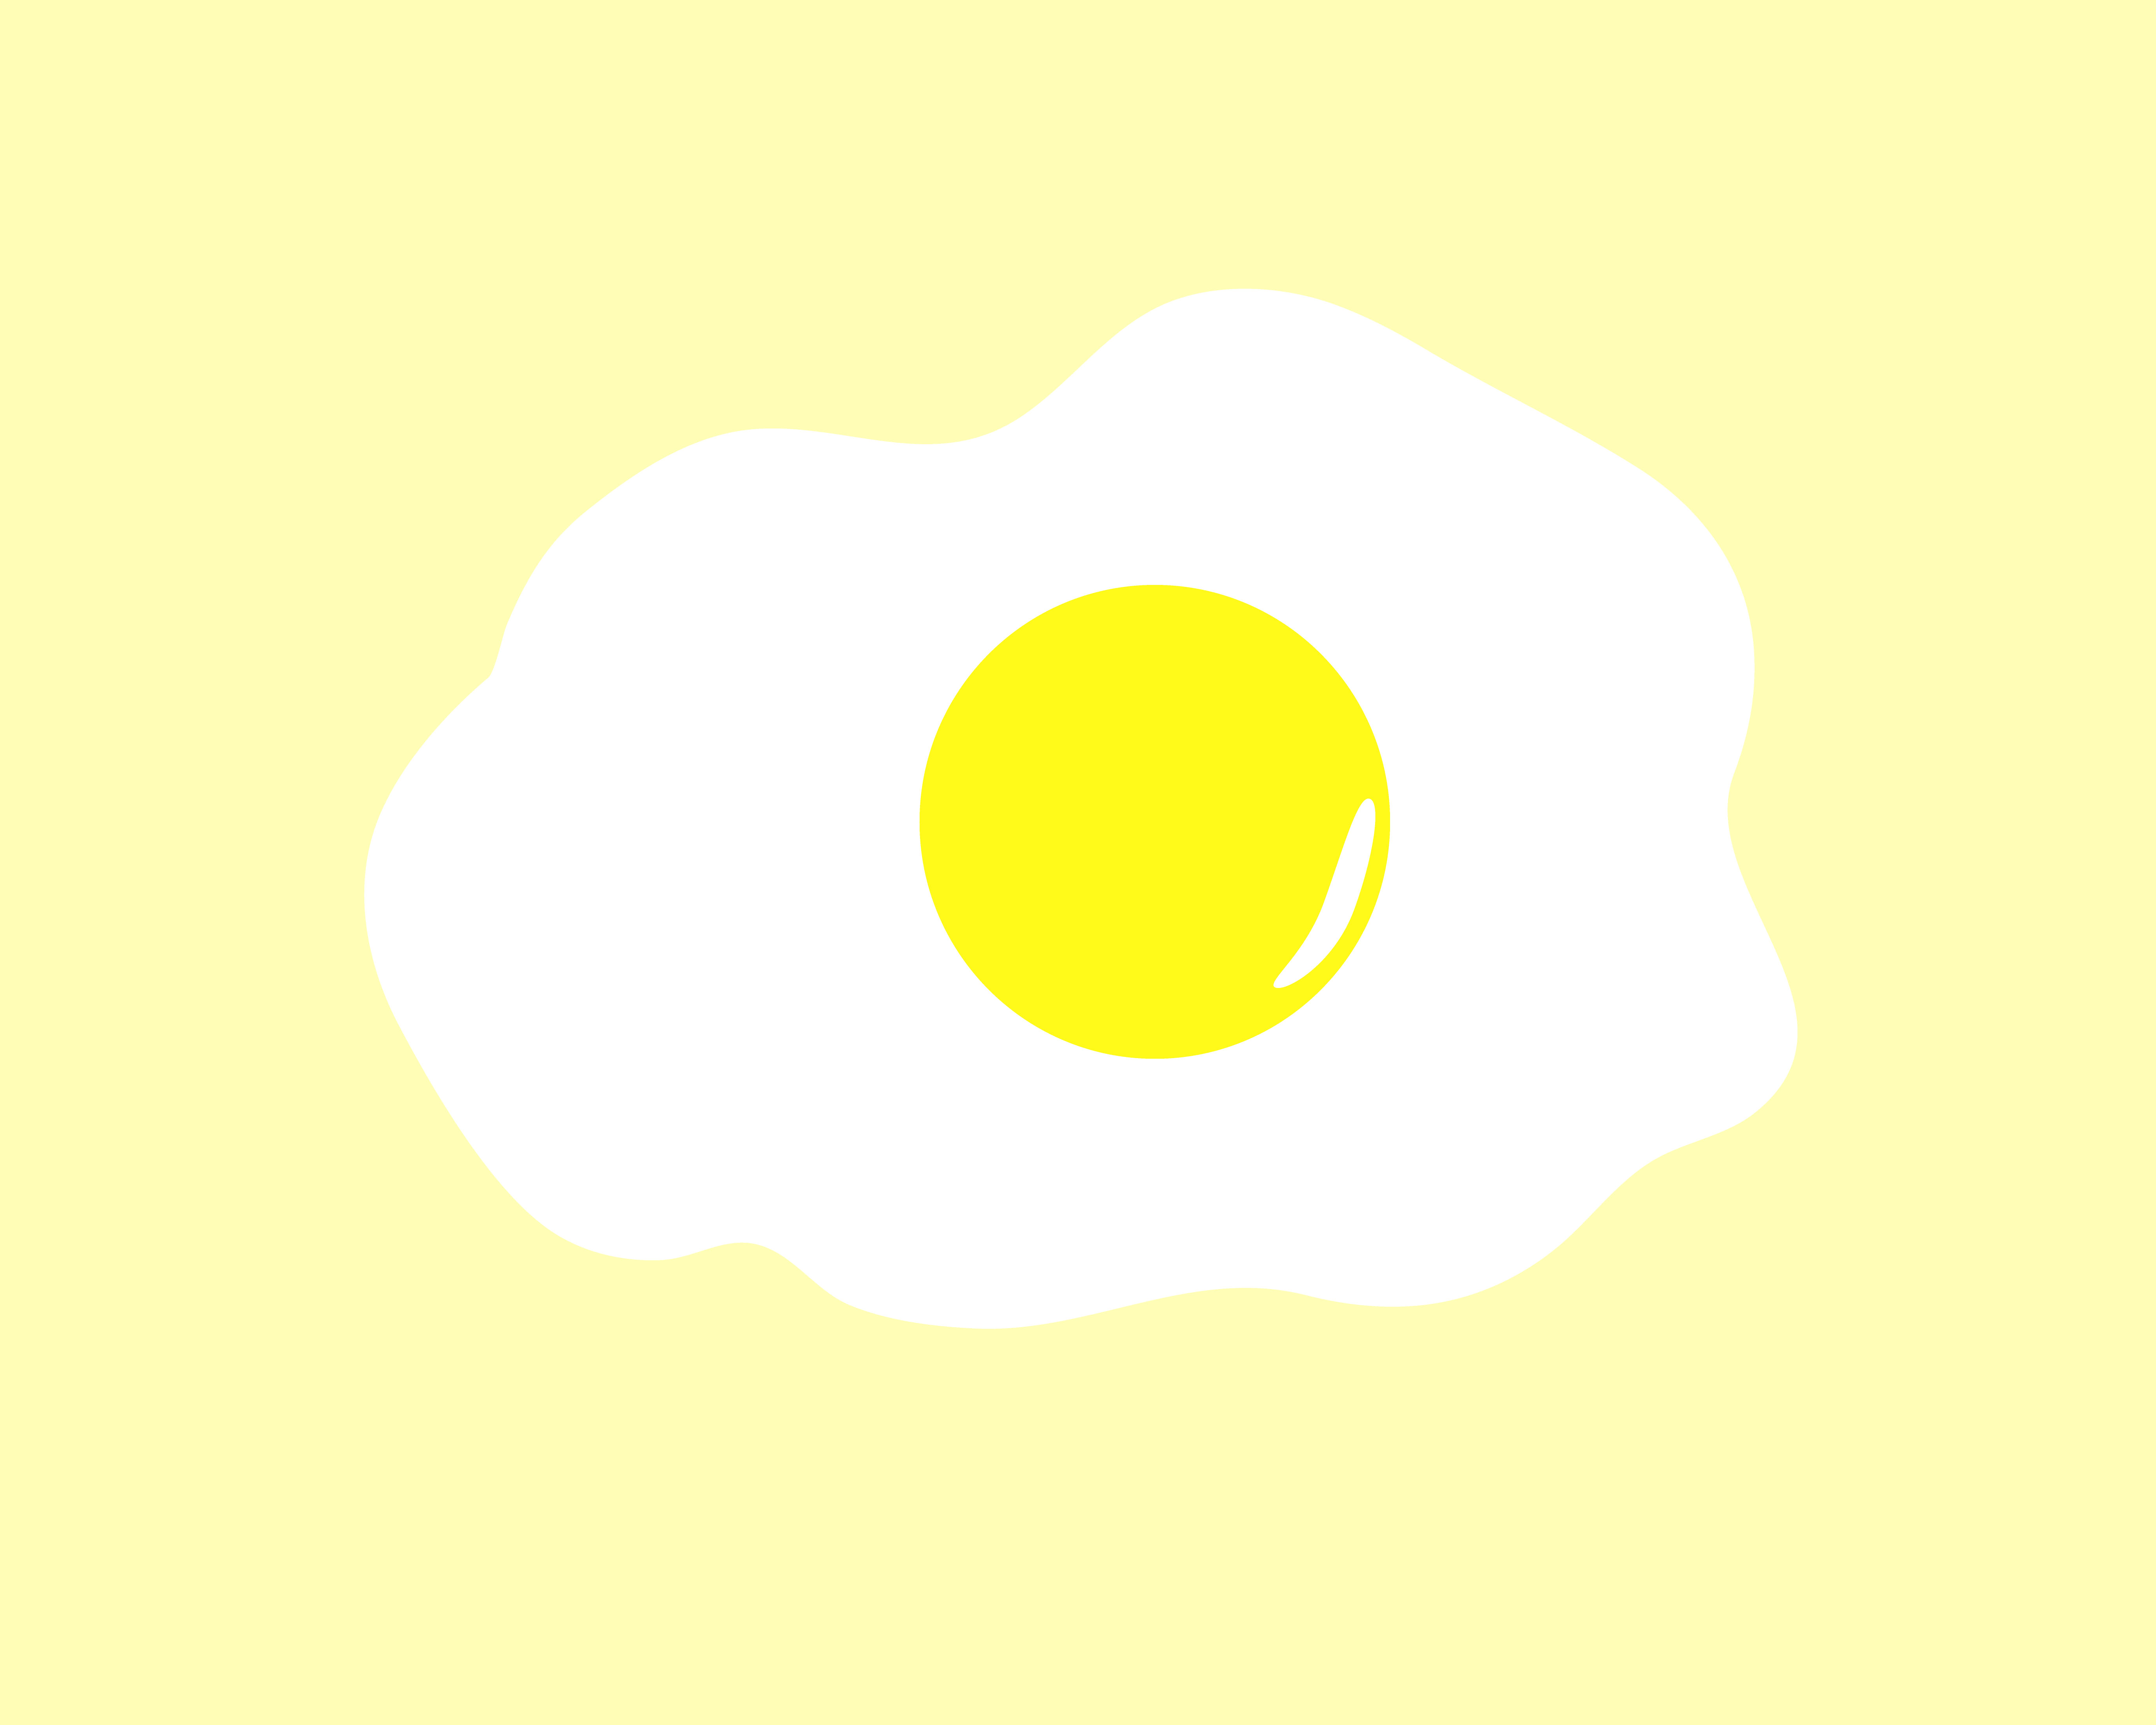 蛋蛋